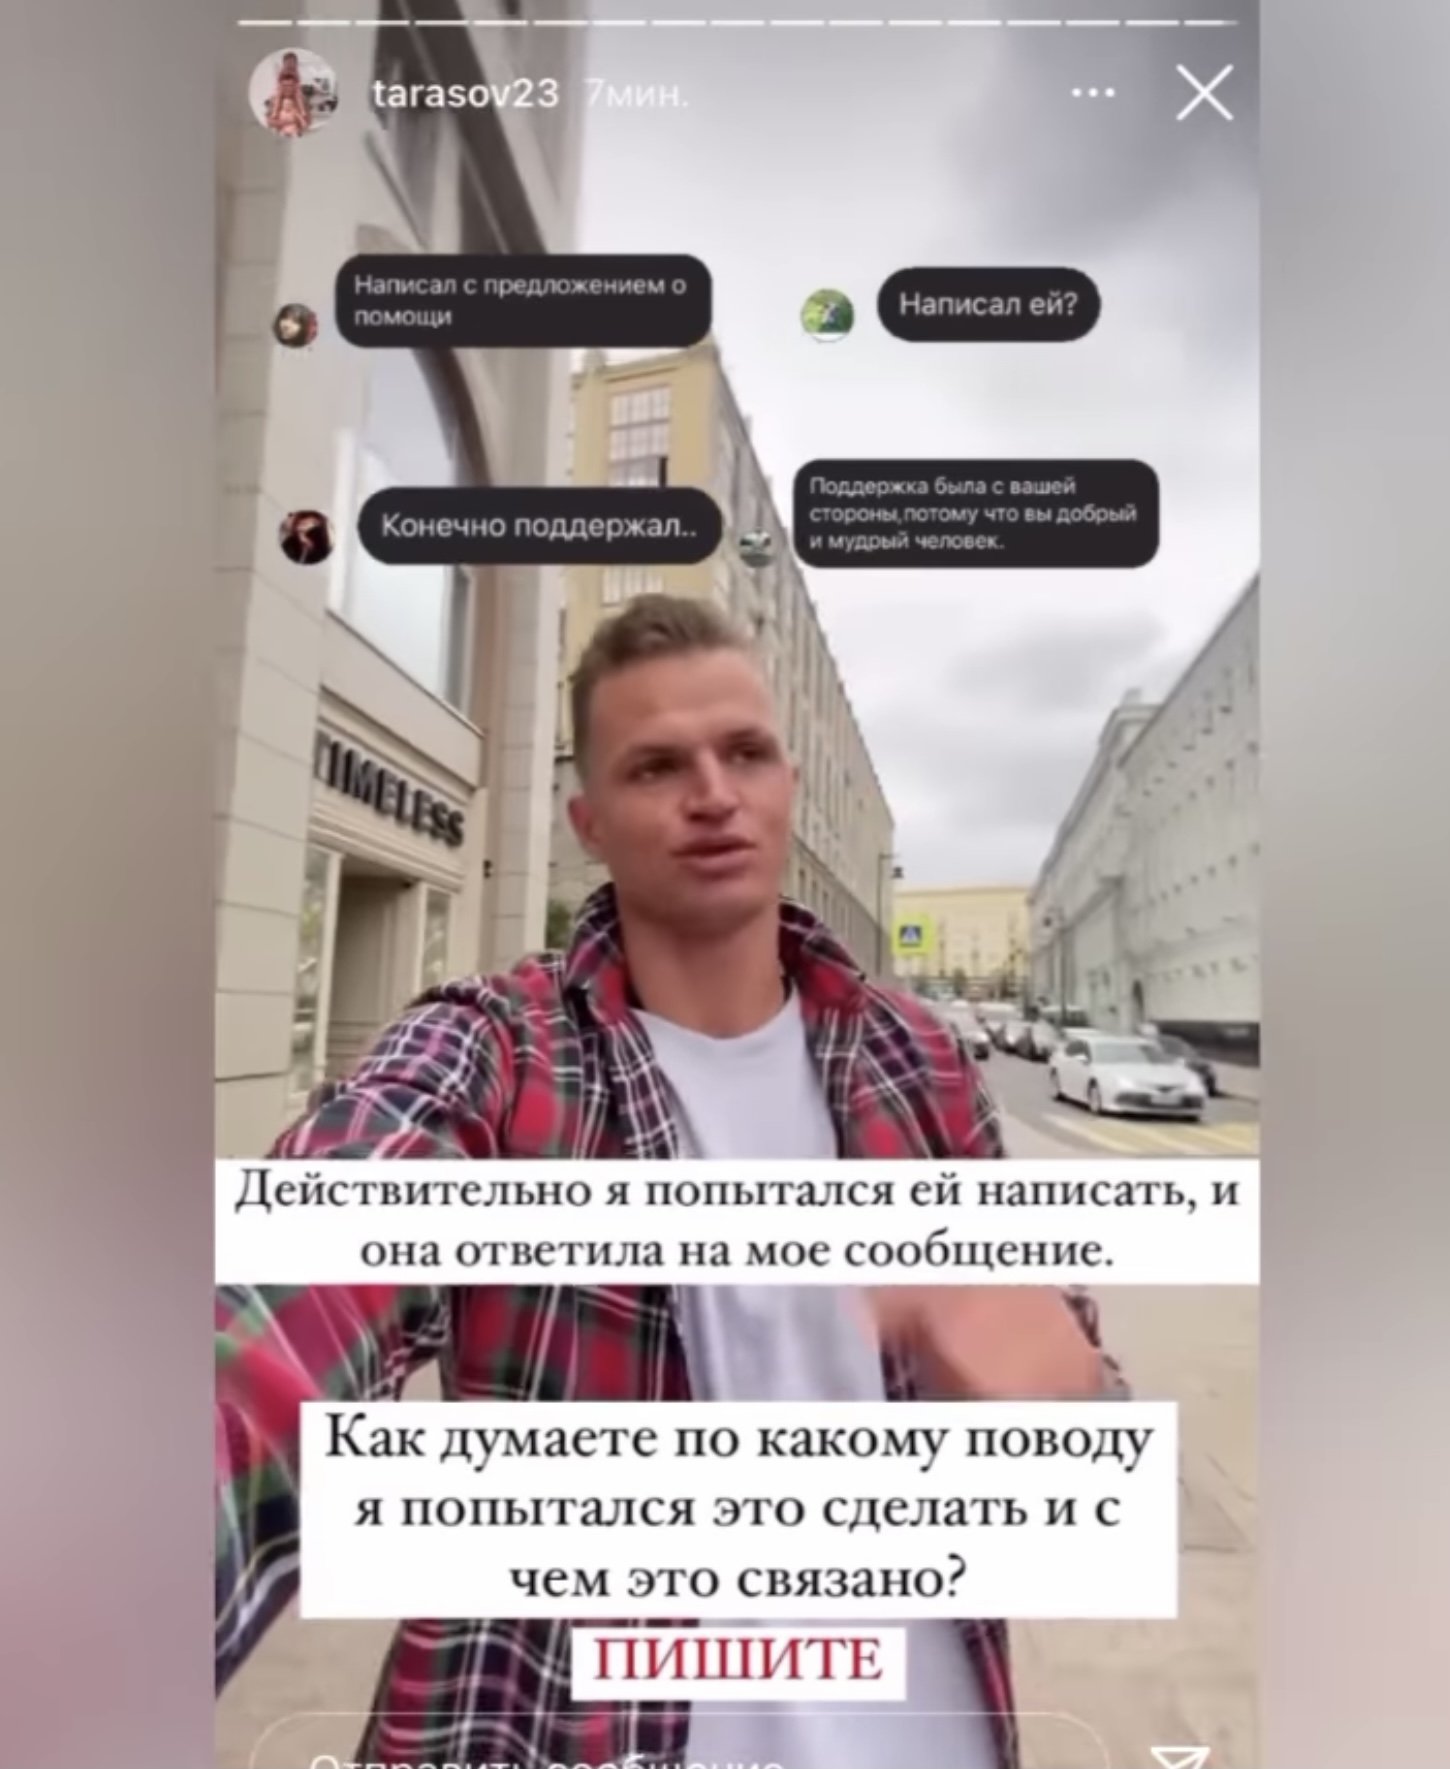 Зачем Дмитрий Тарасов несколько месяцев назад пытался связаться с Ольгой Бузовой?